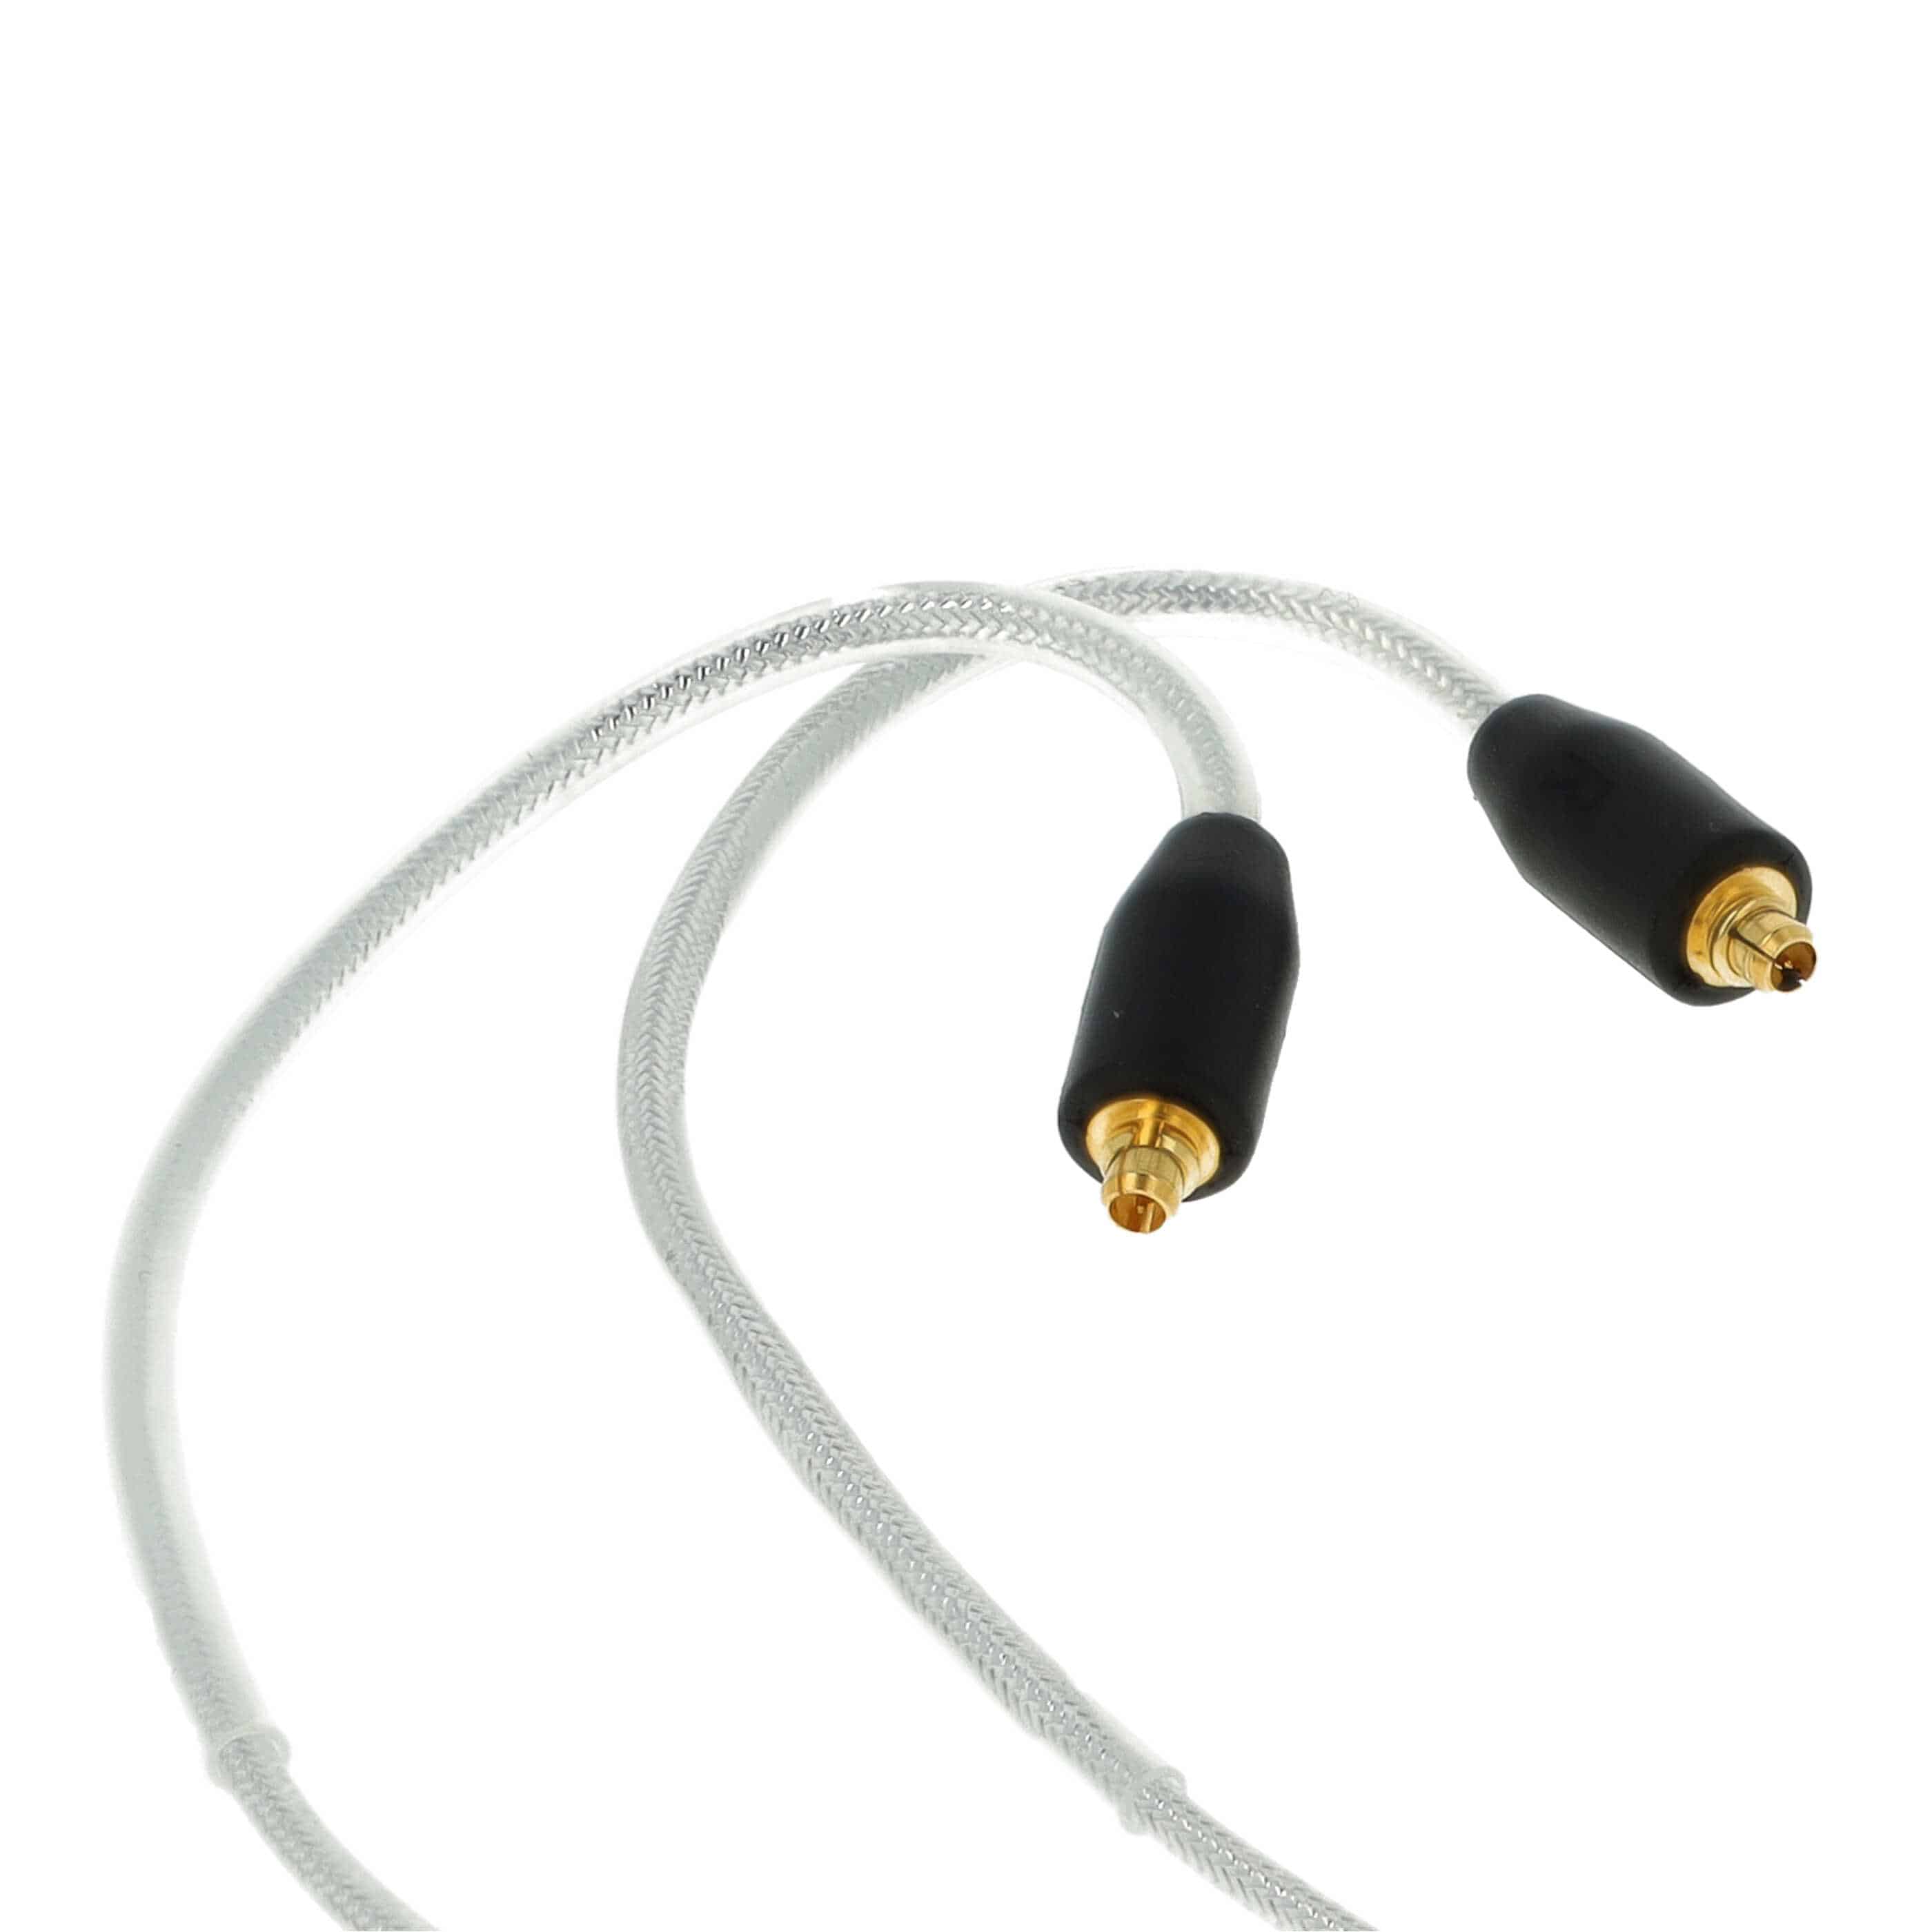 Kopfhörer Kabel passend für Shure u.a., 120 cm, silber